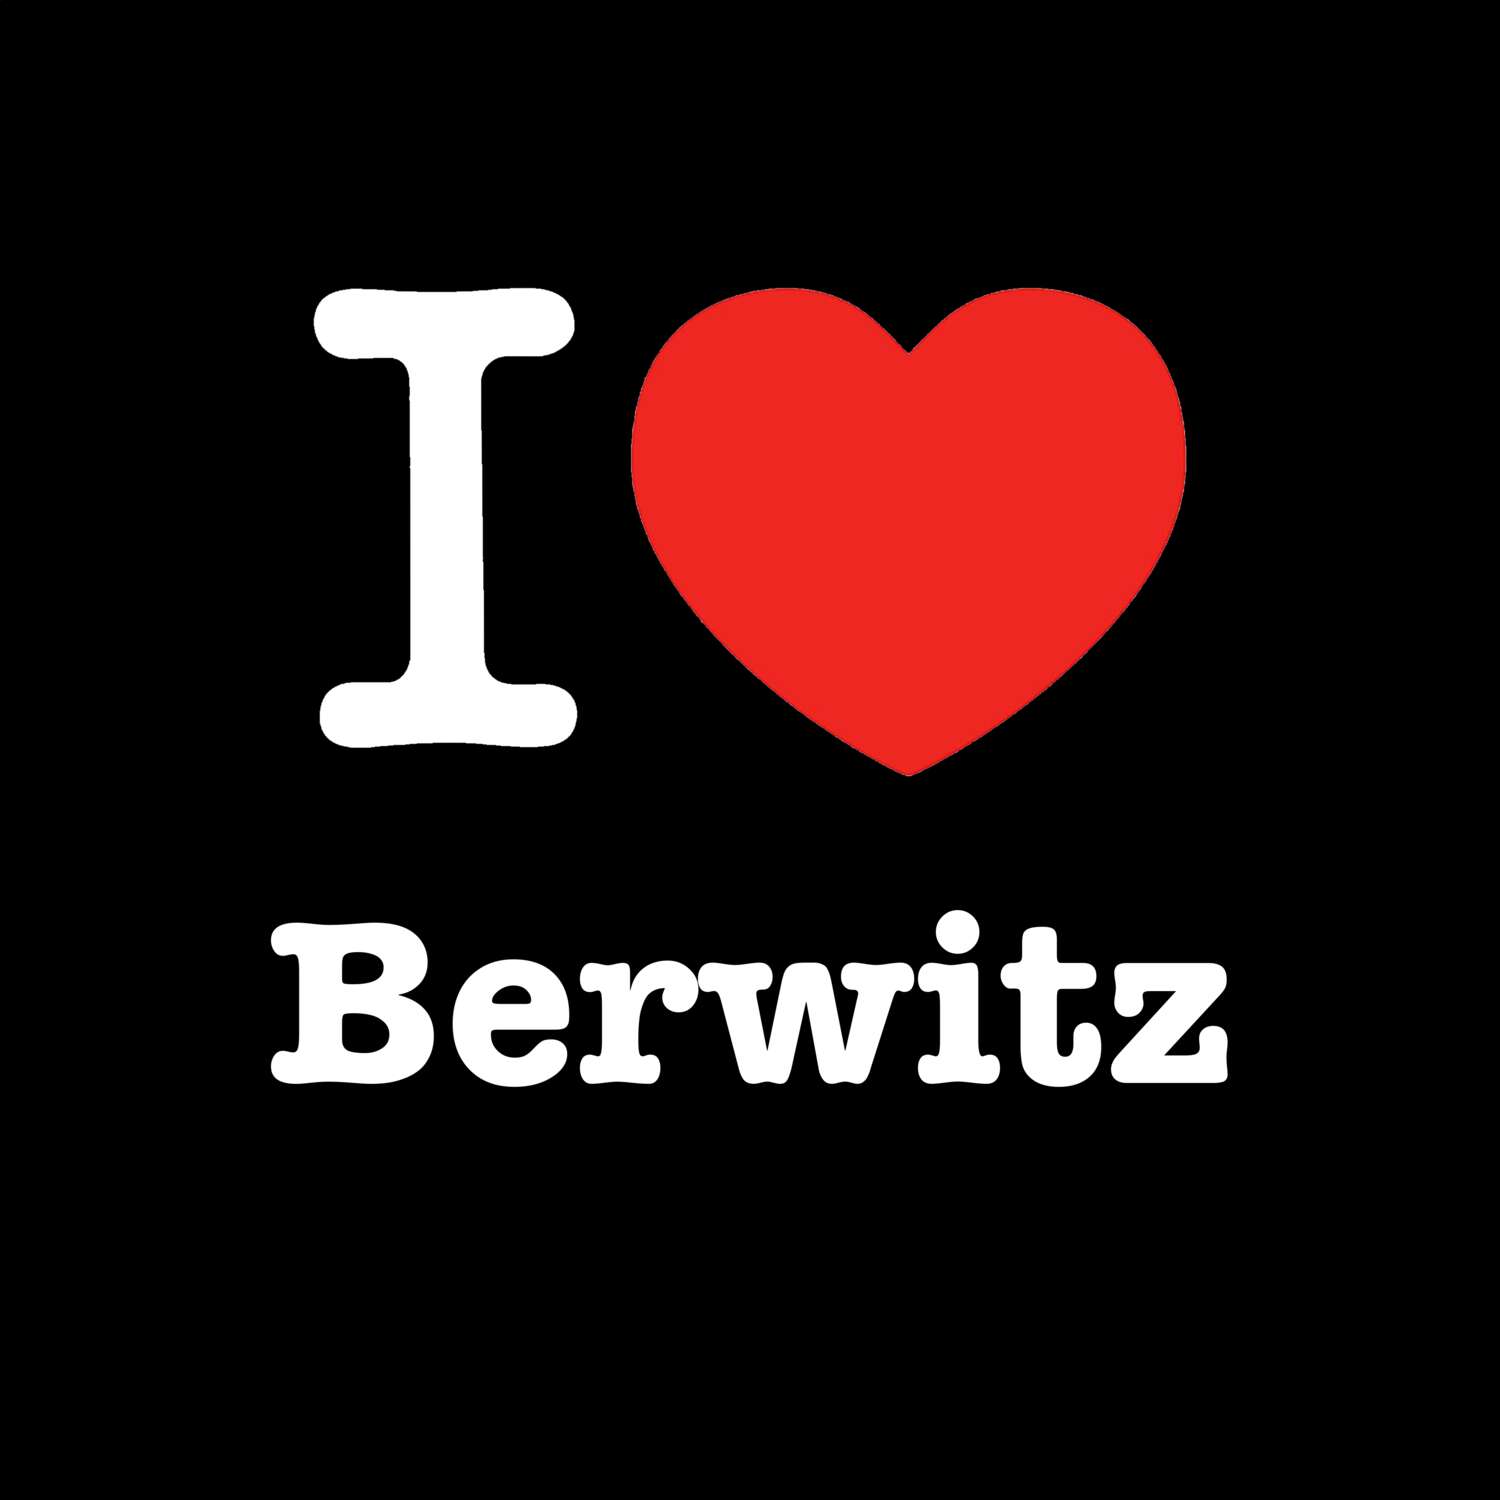 Berwitz T-Shirt »I love«